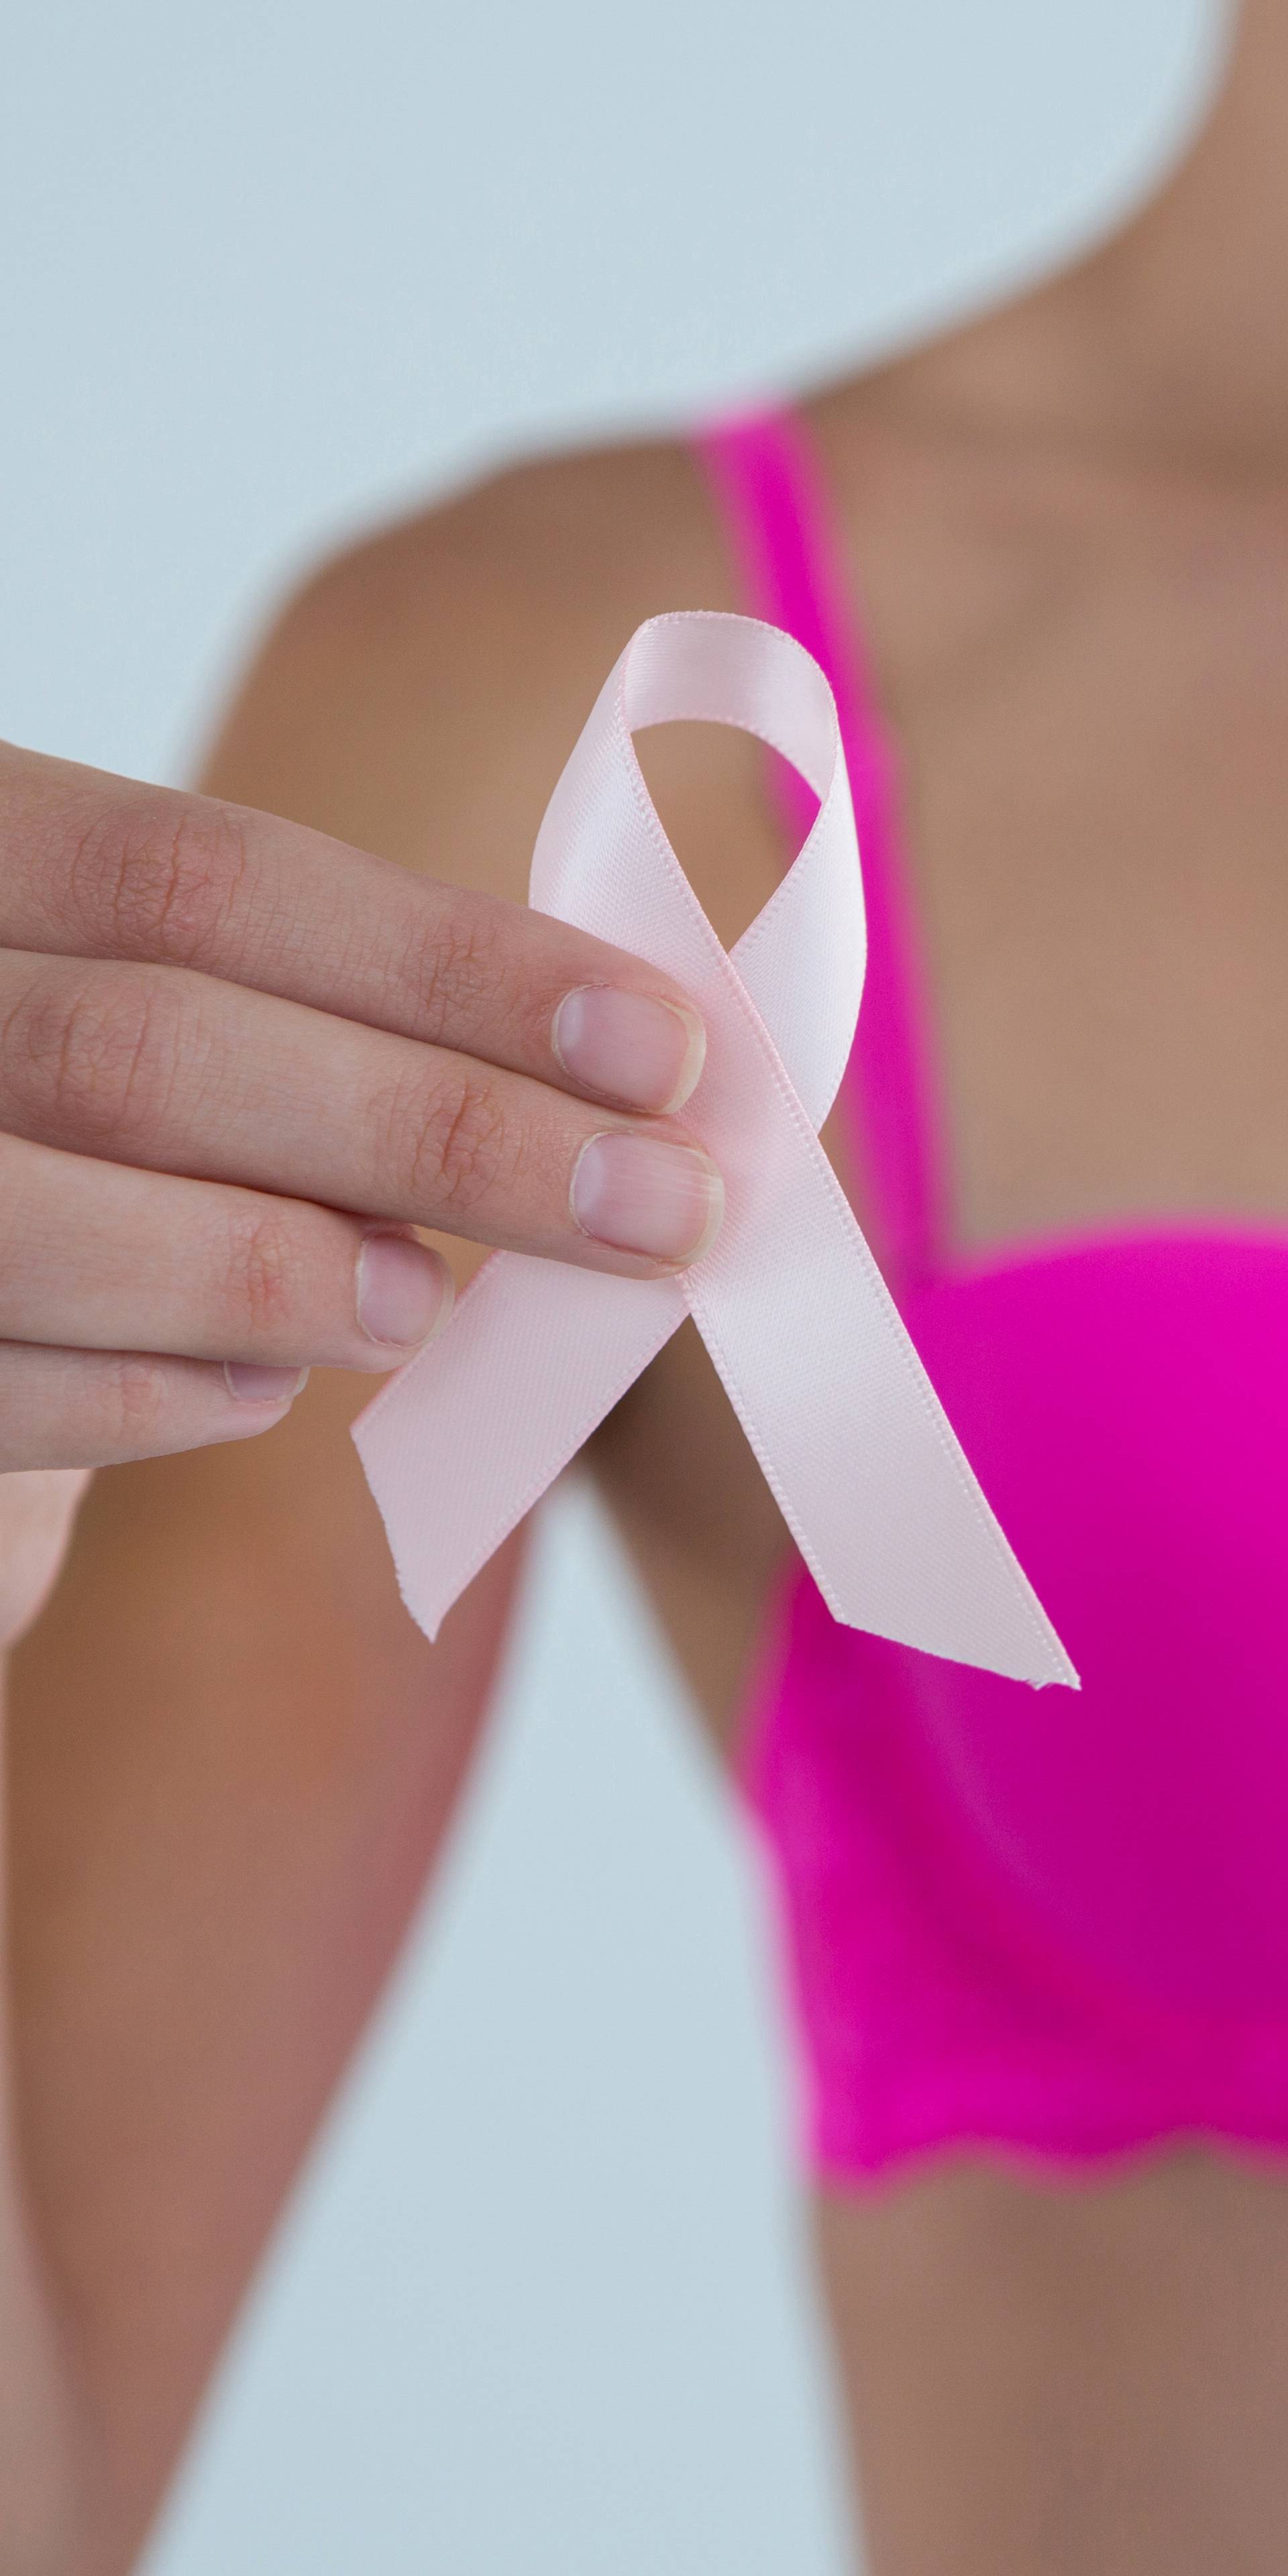 Test krvi koji rak dojke otkriva 5 godina prije pojave simptoma